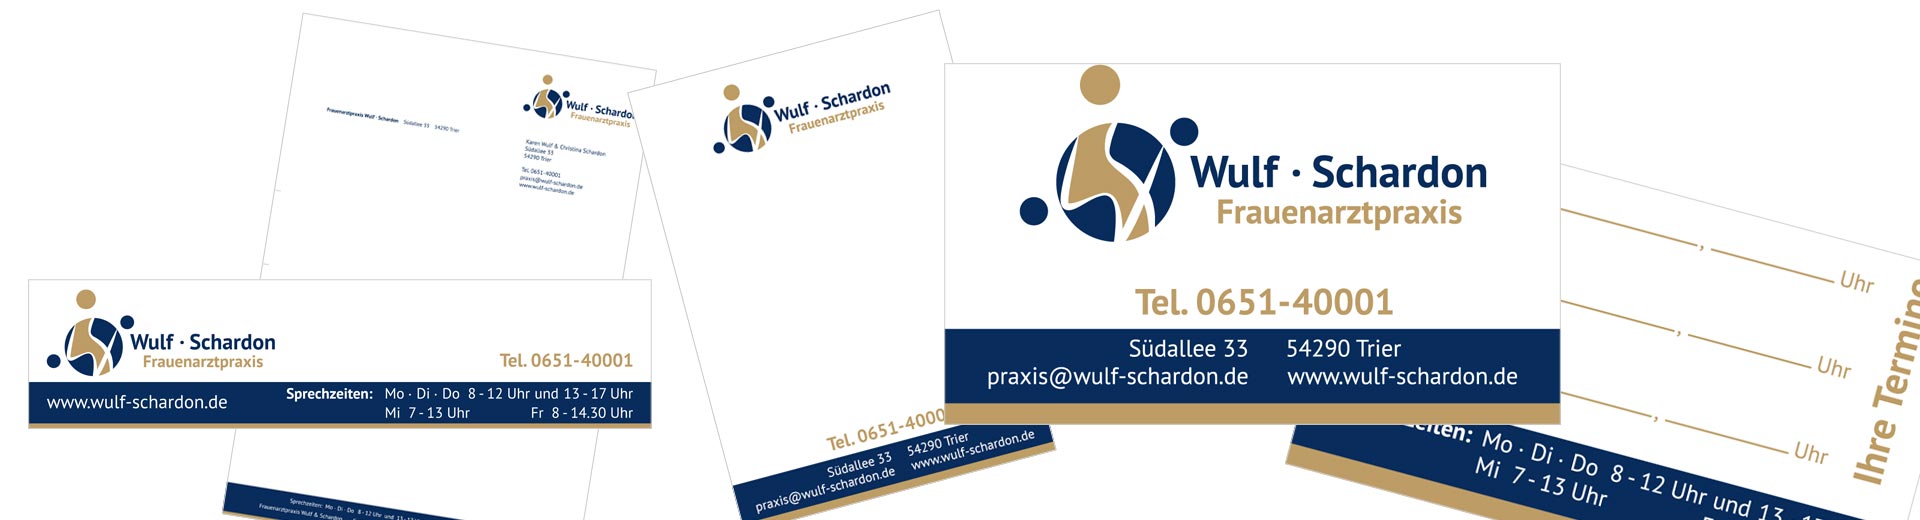 Ausschnitte Türschild, Geschäftspapier, Privatrezept, Visiten-/Terminkarte von Wulf & Schardon Frauenarztpraxis 